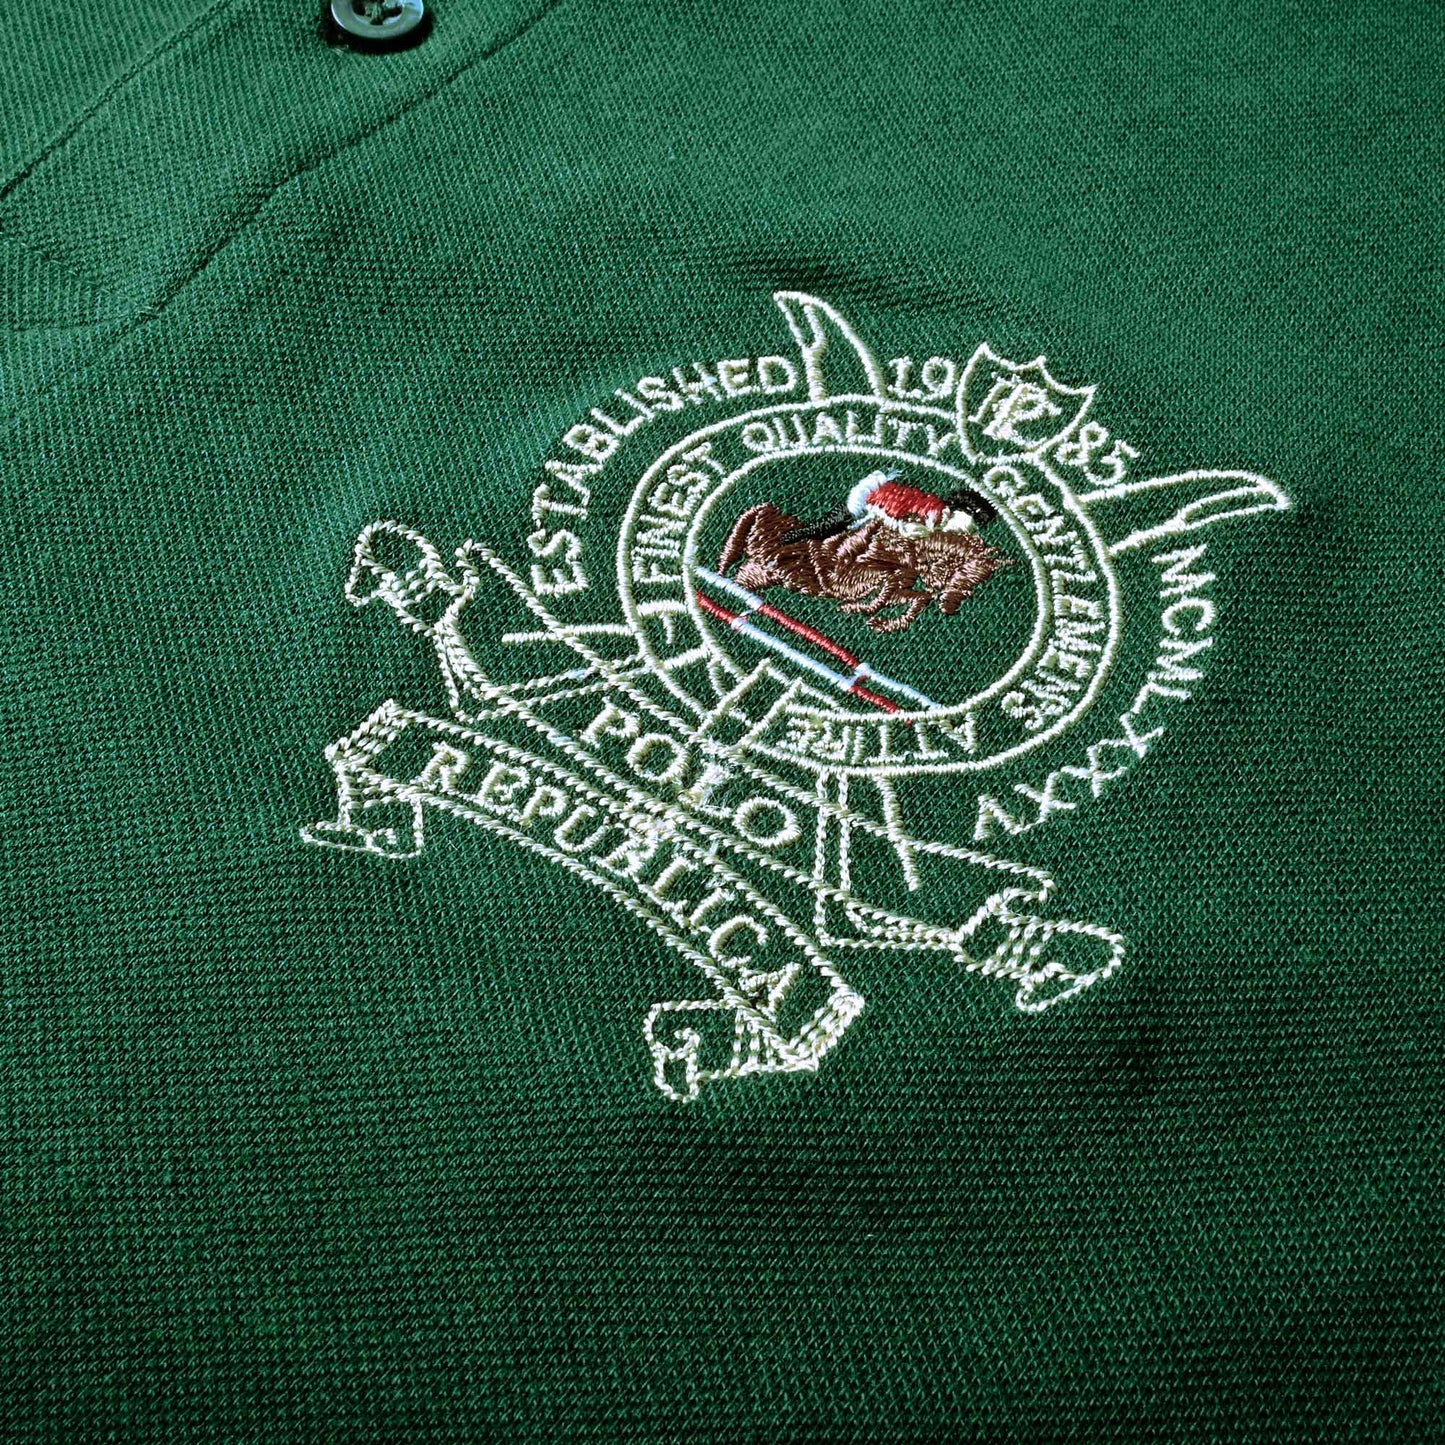 Polo Republica Men's Horse Rider & 8 Polo Embroidered Short Sleeve Polo Shirt Men's Polo Shirt Polo Republica 